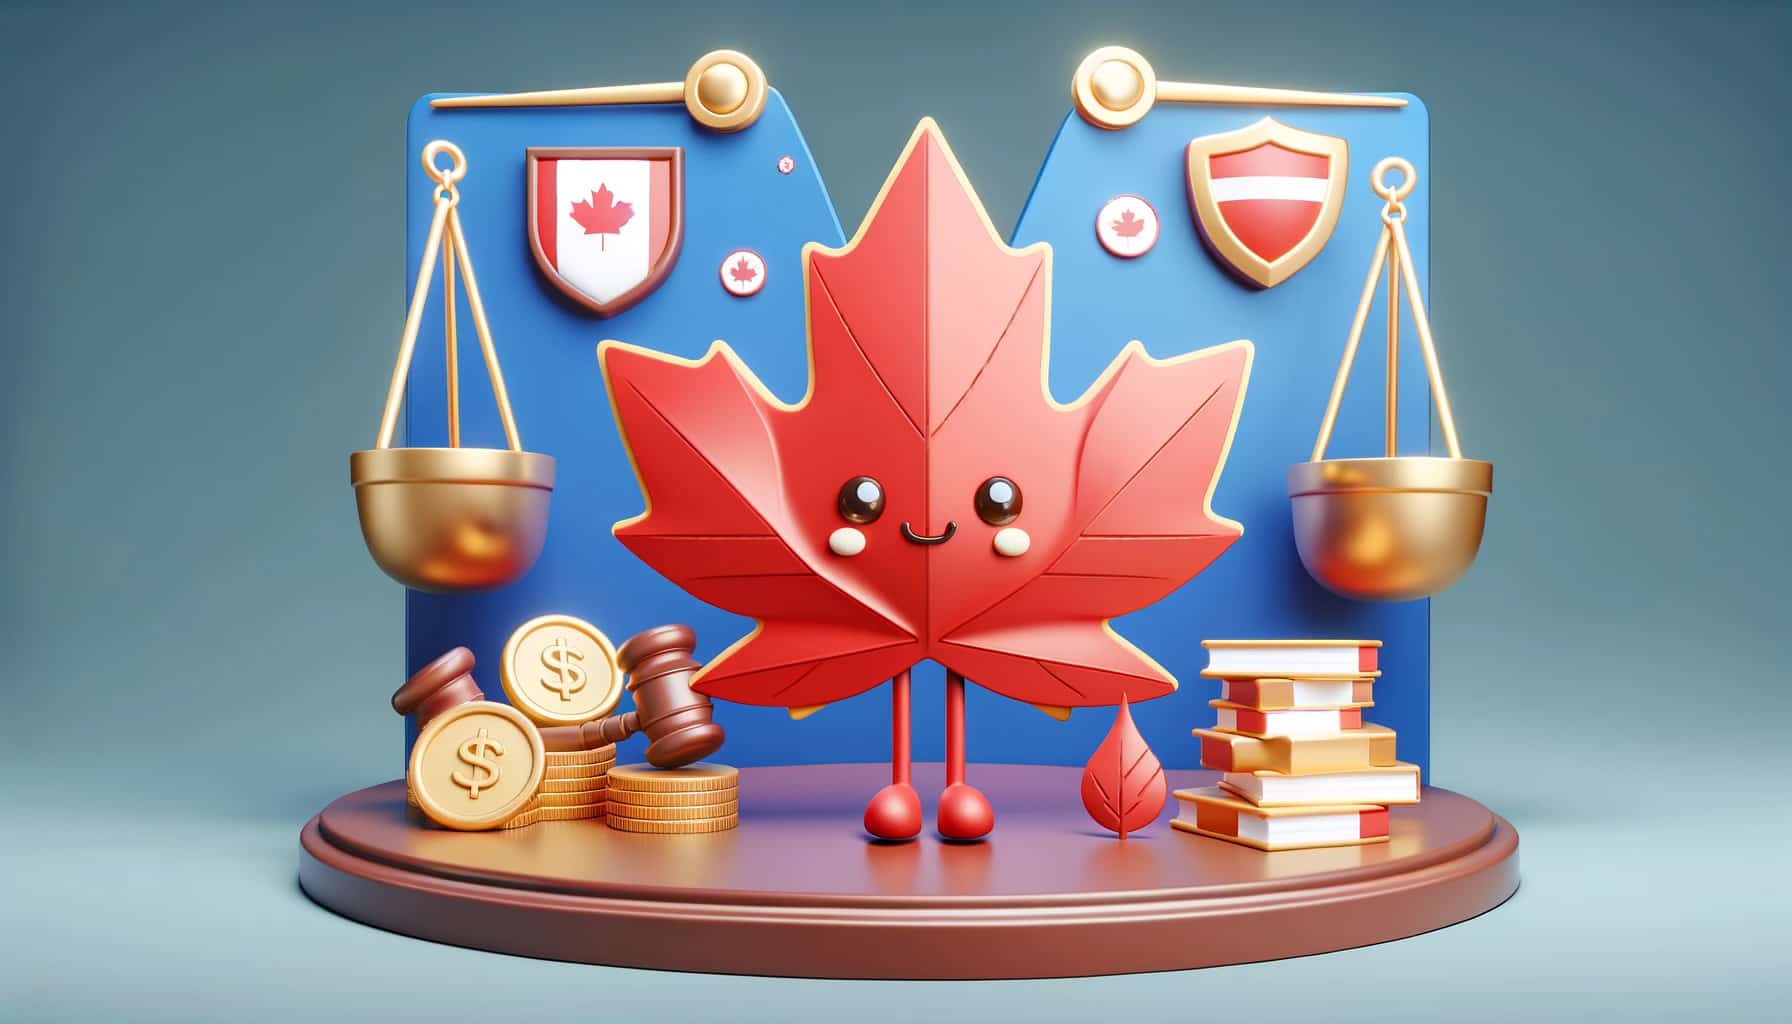 Representing Canadian dollar aiming at maximizing winnings.